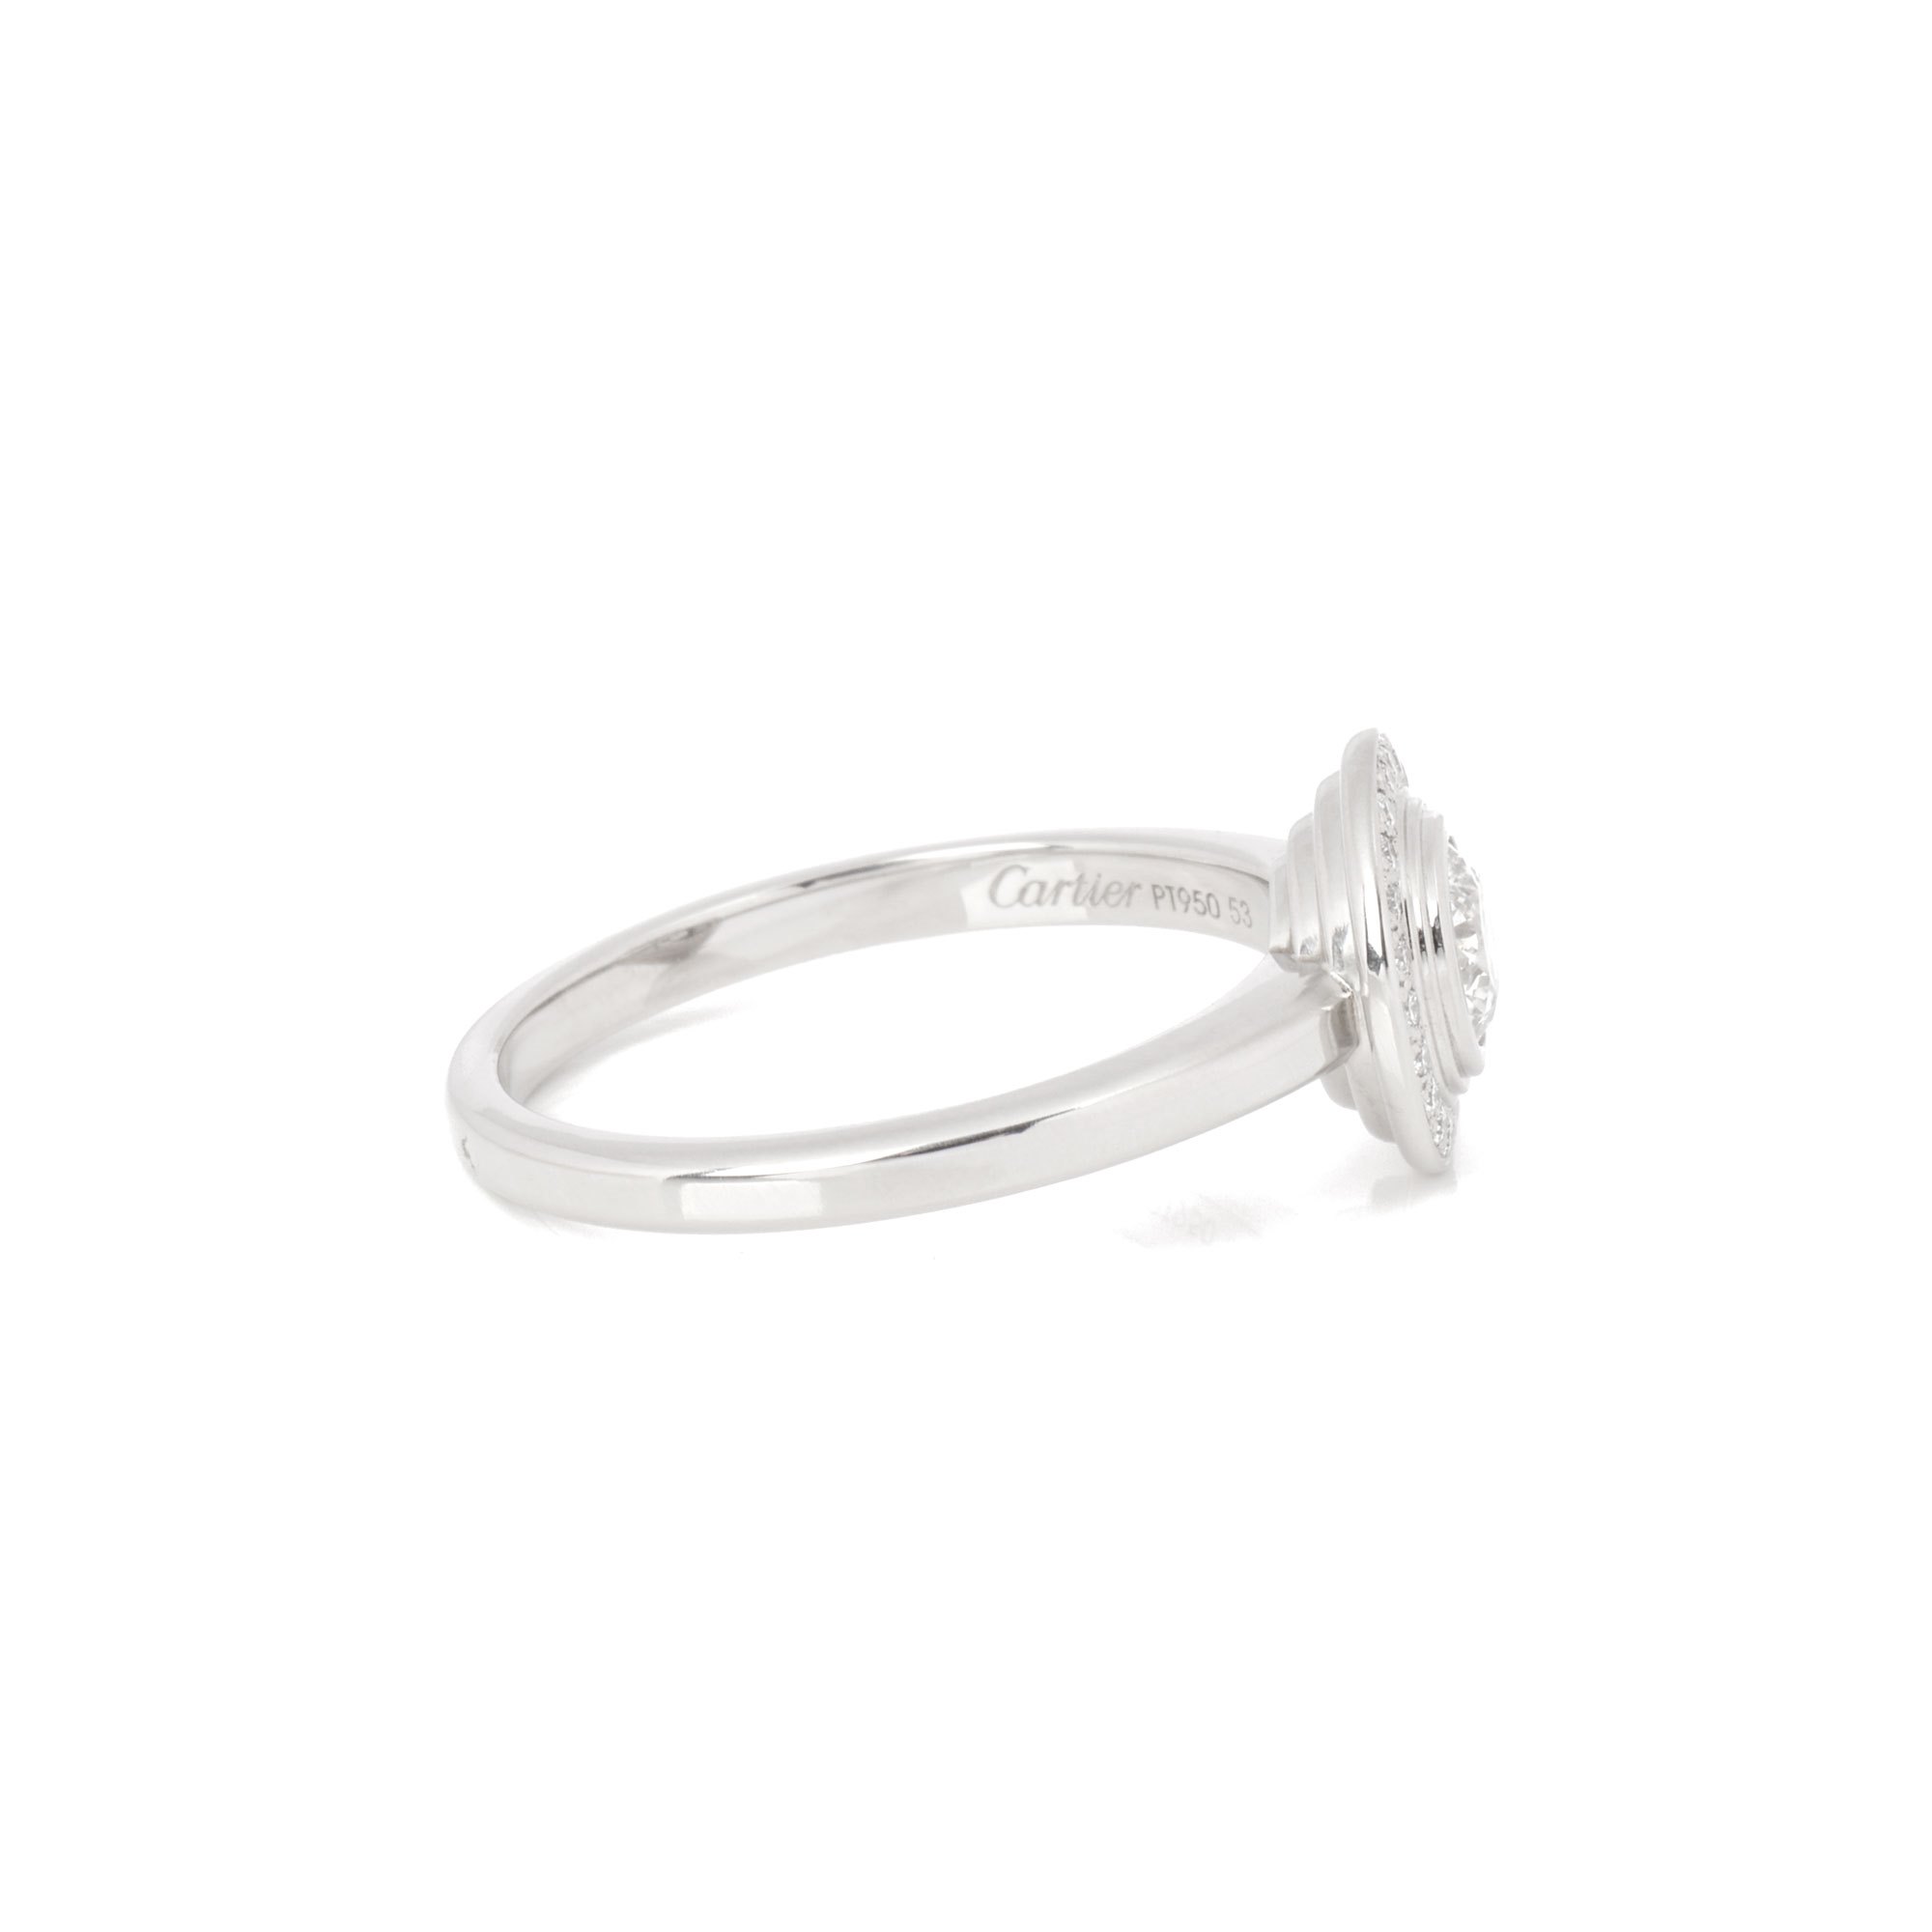 Cartier Damour Diamond Halo Ring